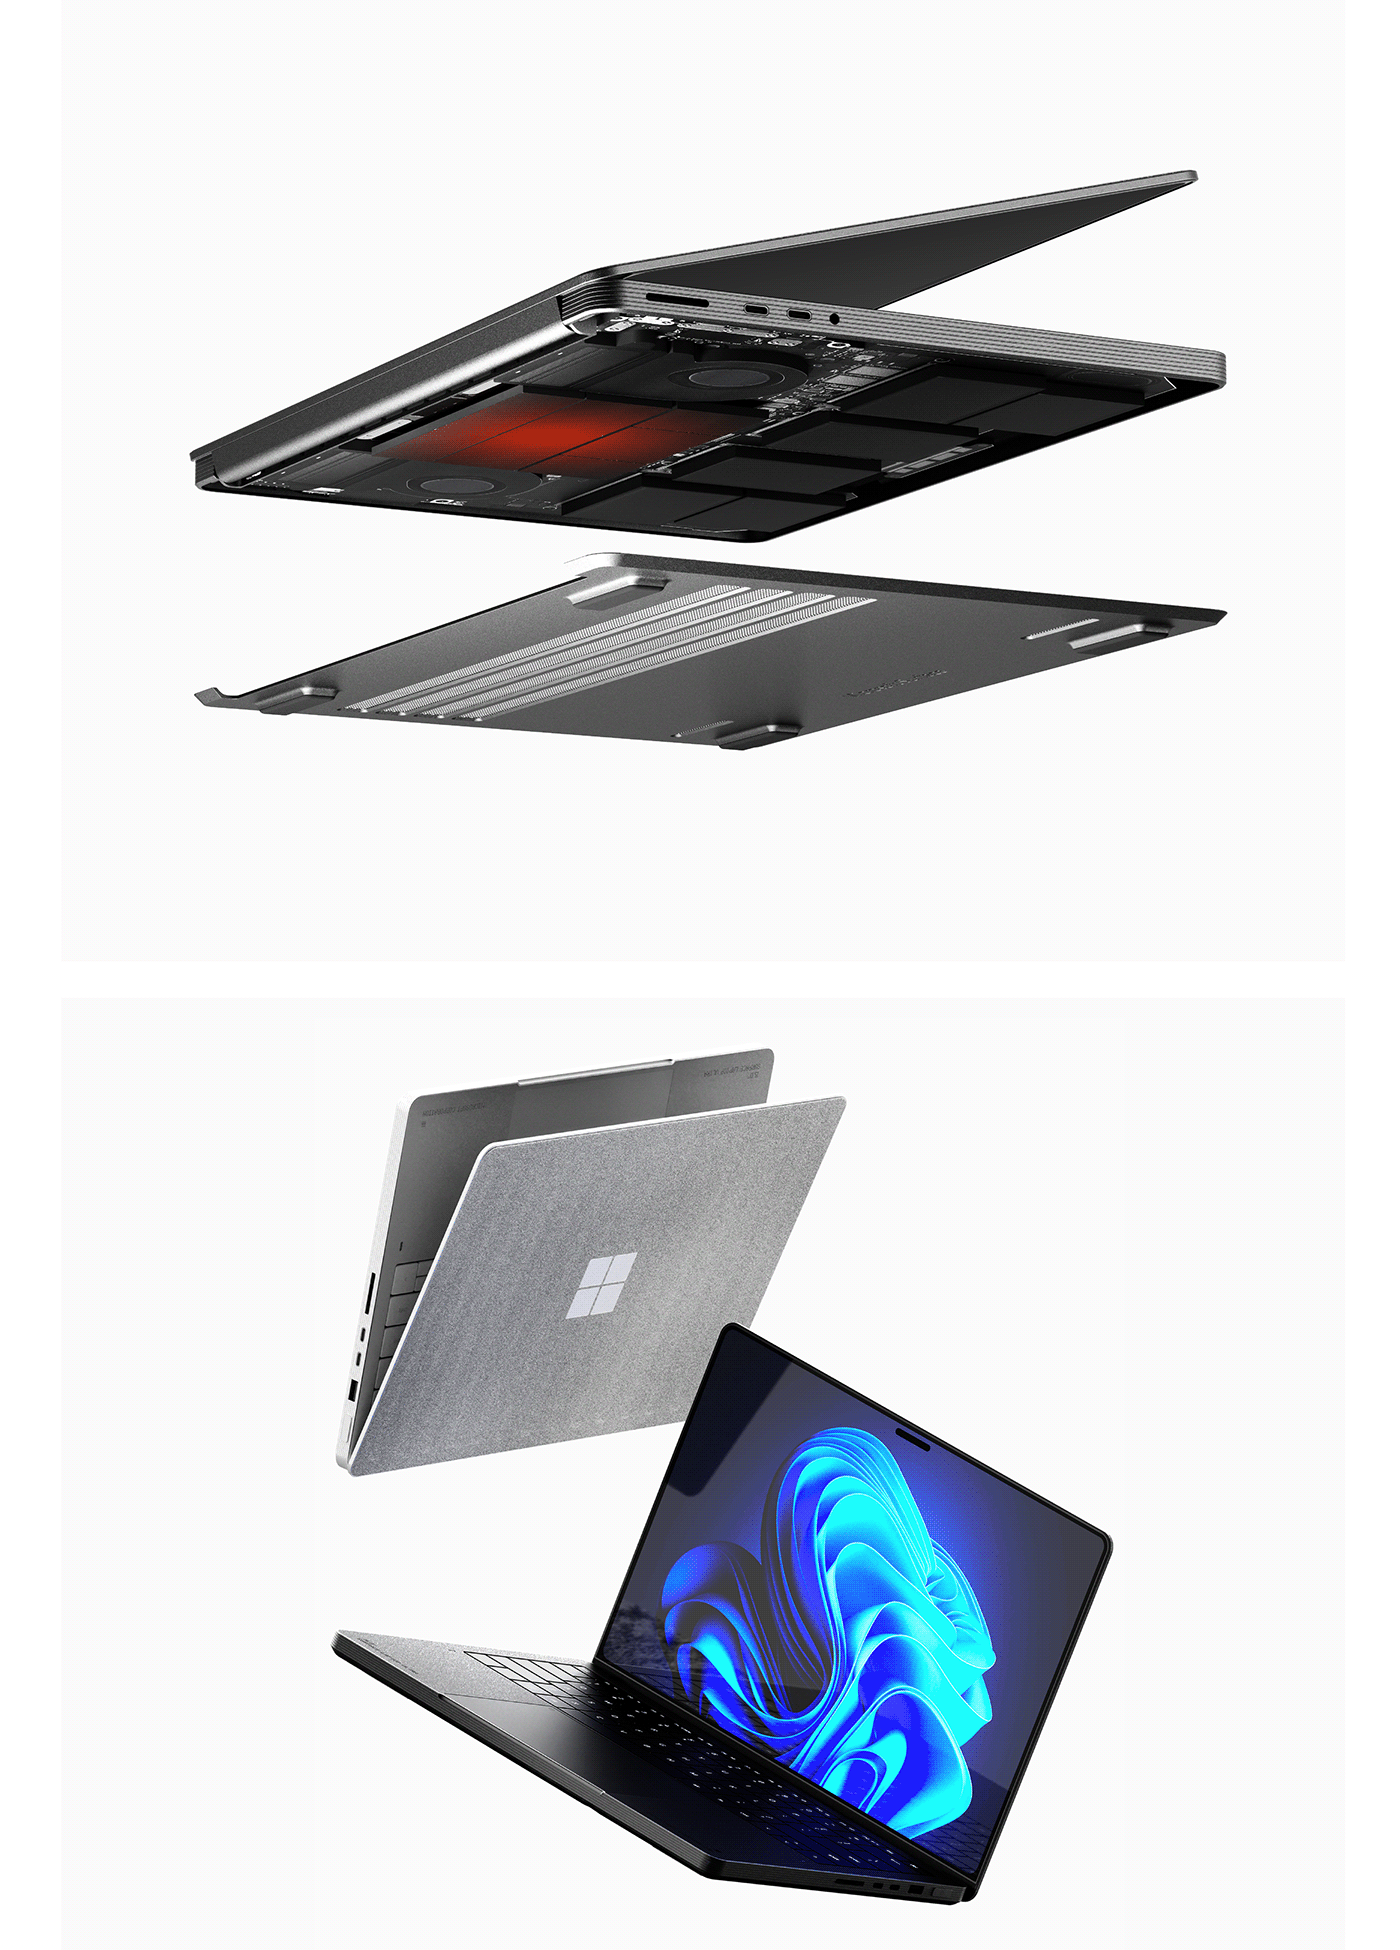 product design  industrial design  Microsoft surface Laptop desktop workstation keyshot concept rendering